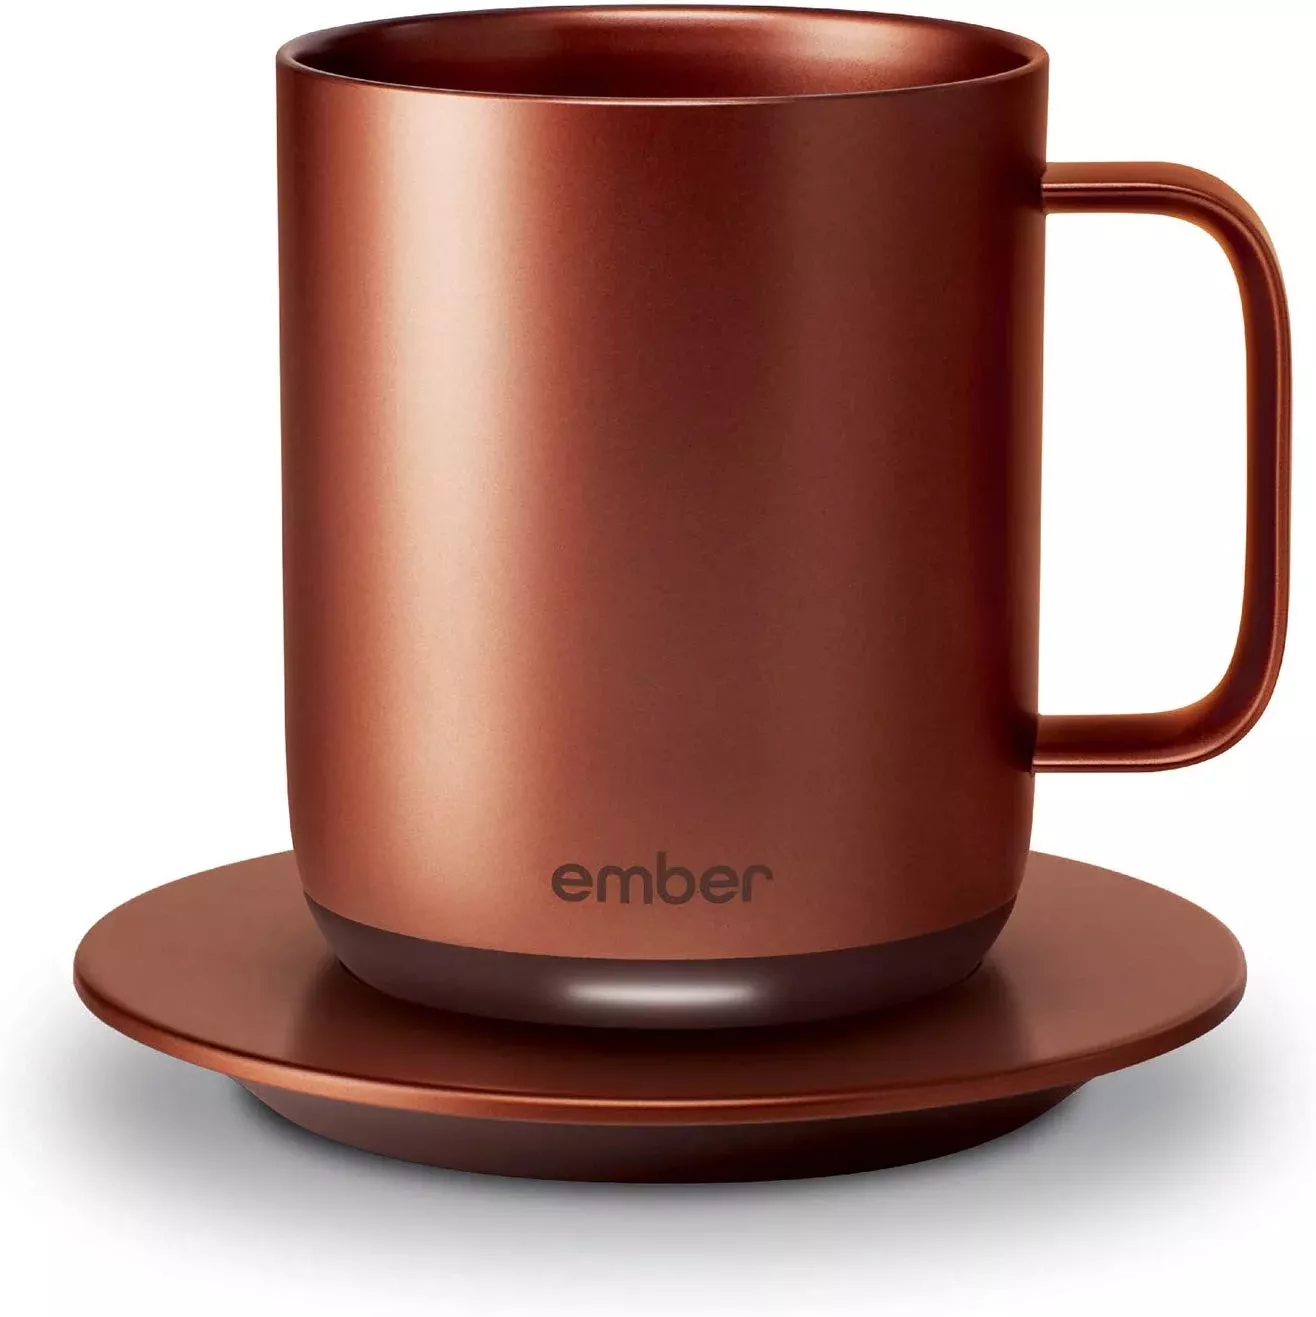 Mariah Carey Amazon Gift Guide 2023: Ember Temp Mug 2023